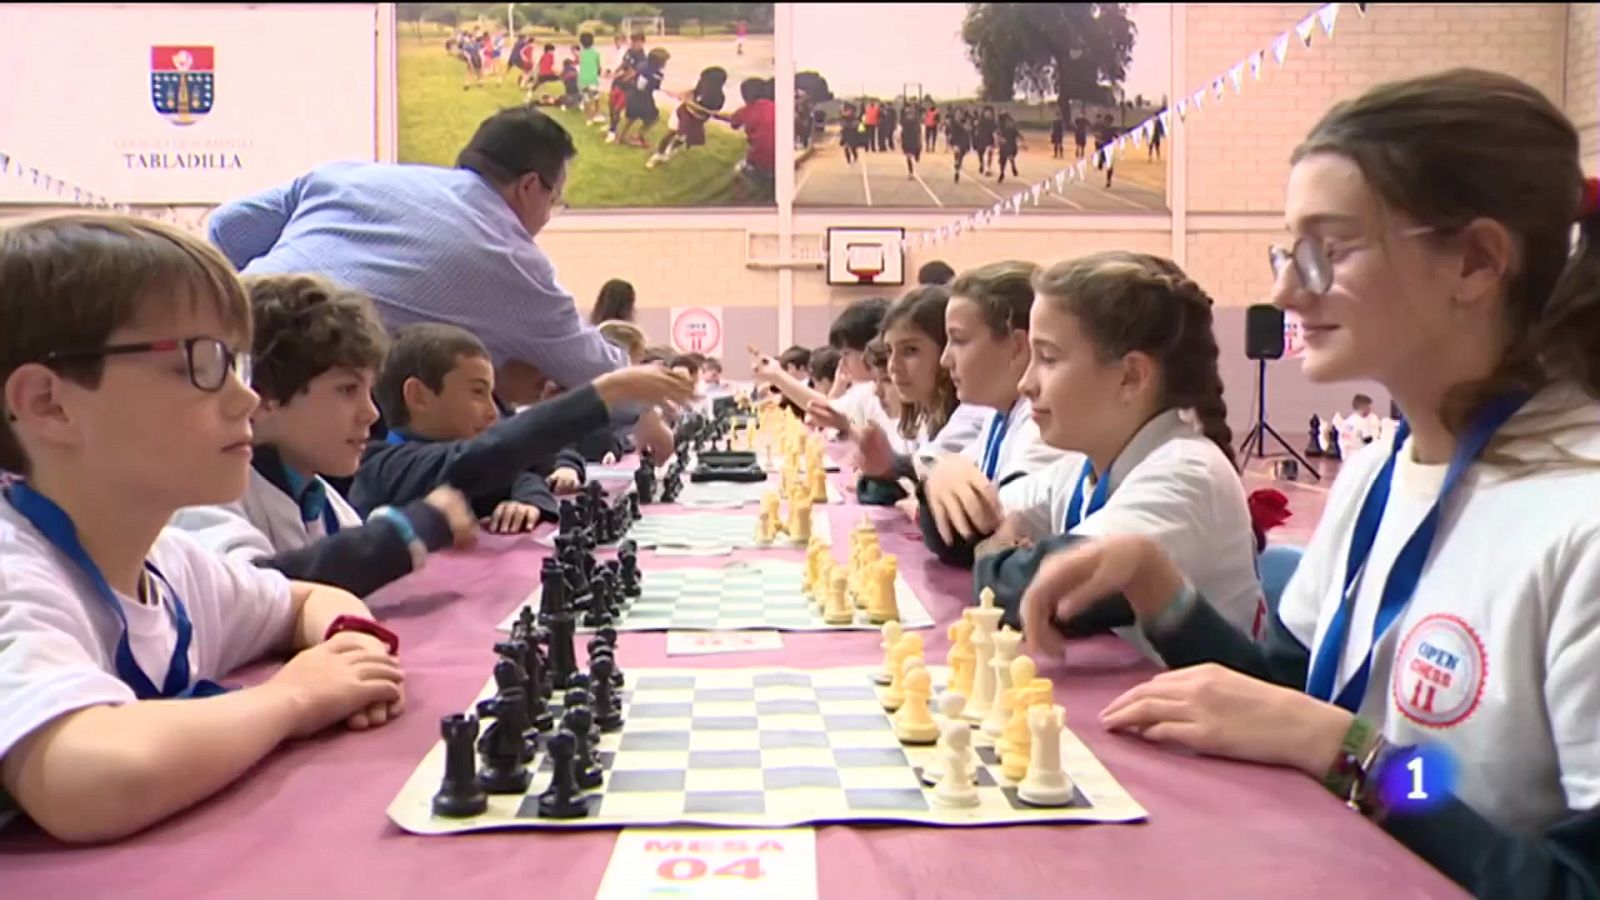 El ajedrez como fuente de aprendizaje - Ver ahora